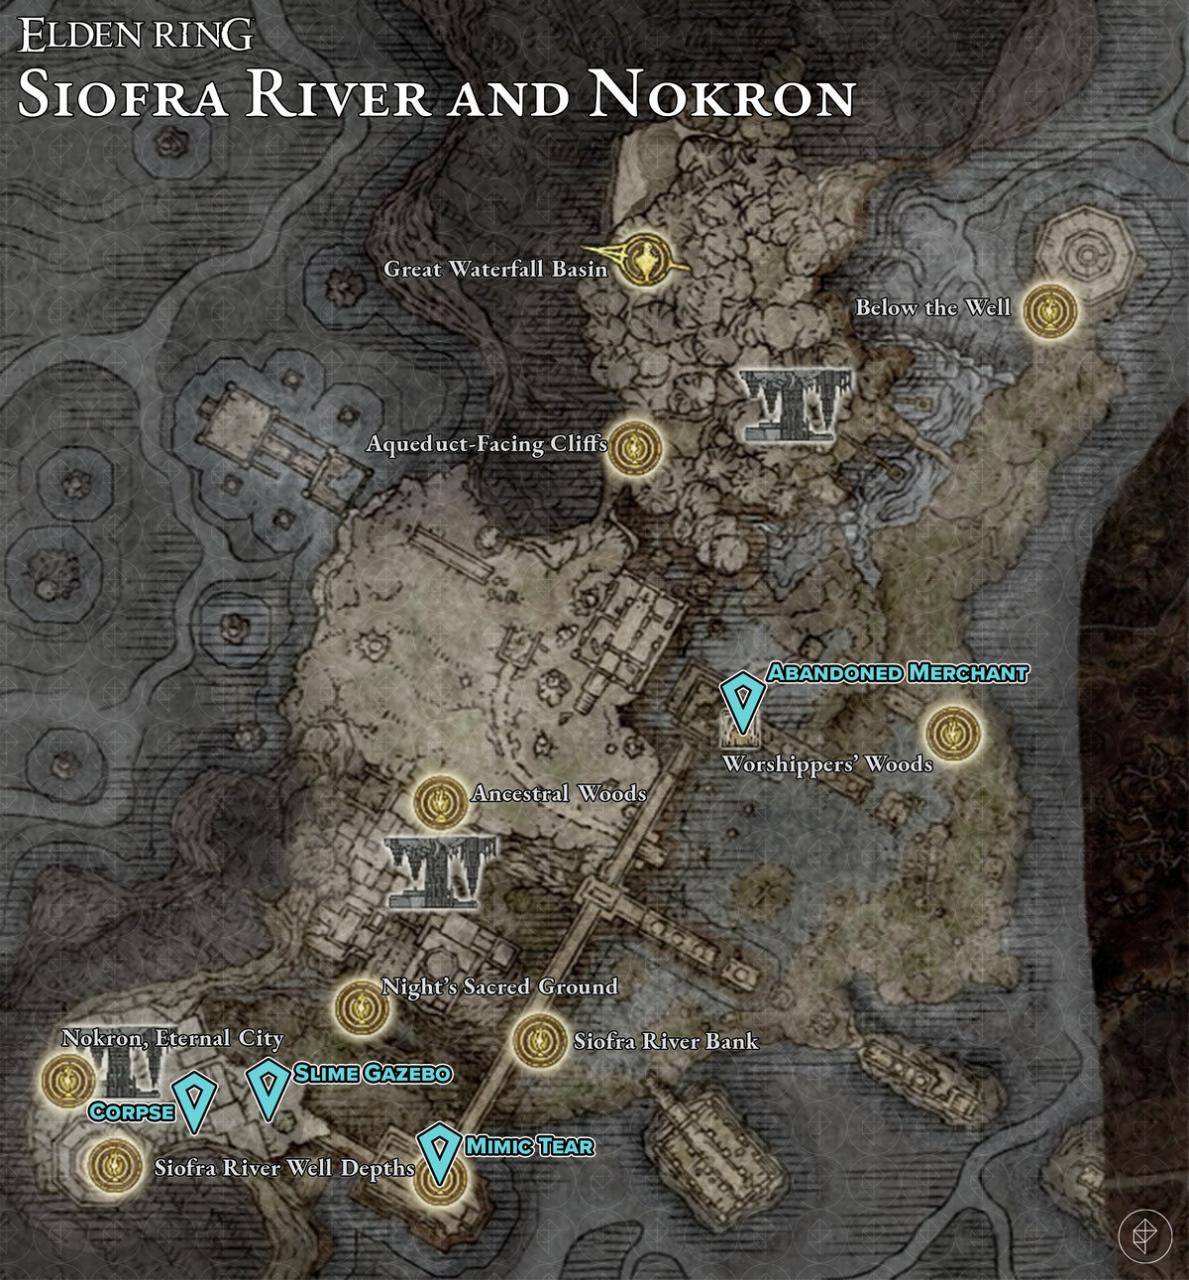 顯示 Siofra 河和 Nokron、永恆之城幼蟲撕裂位置的地圖